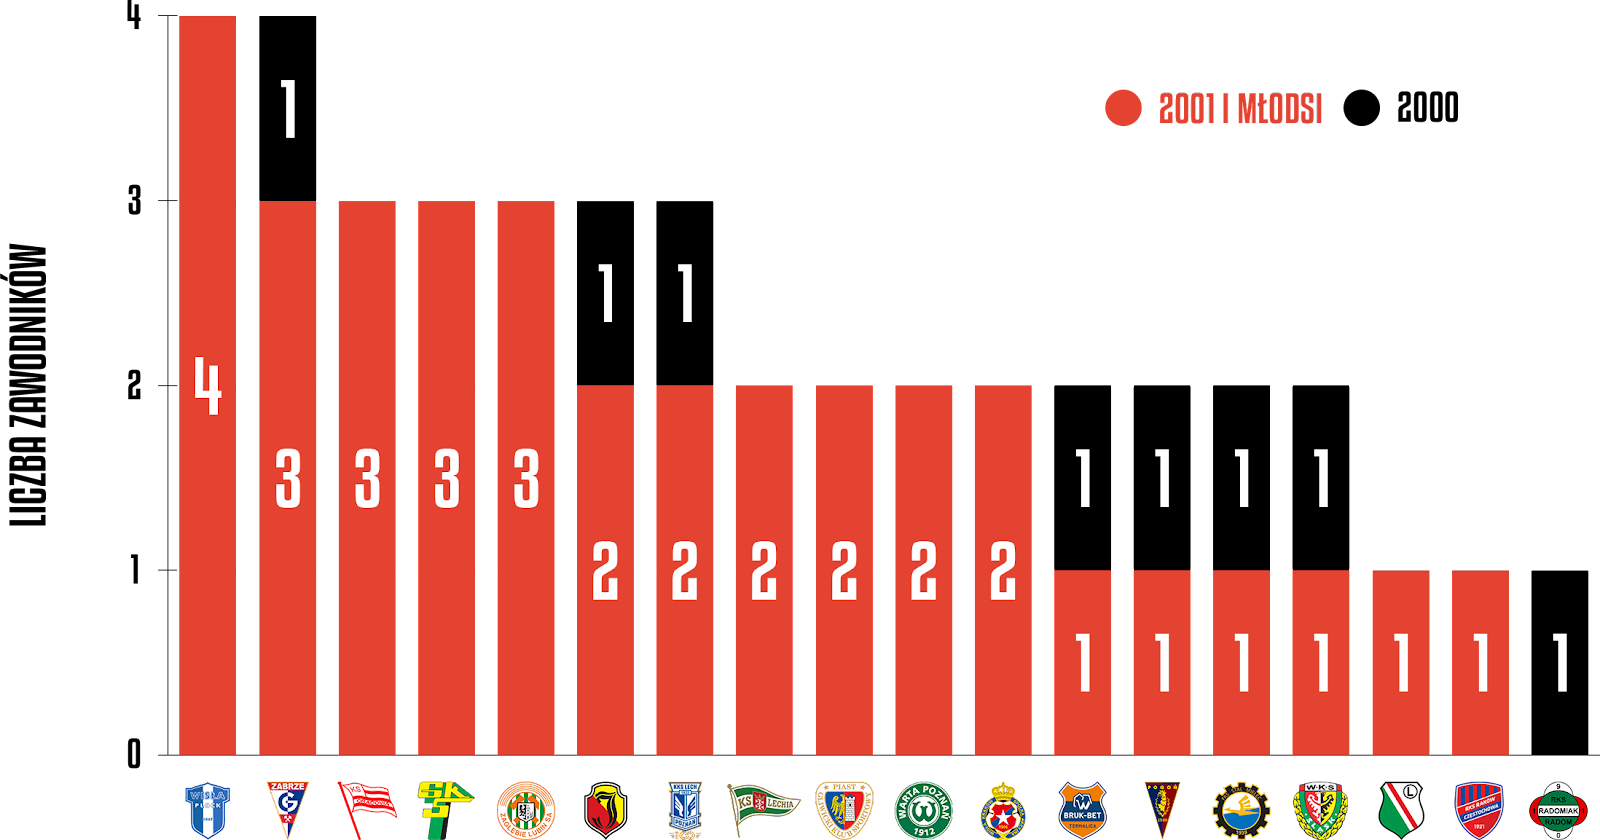 Młodzieżowcy w poszczególnych klubach podczas 27. kolejki PKO Ekstraklasy<br><br>Źródło: Opracowanie własne na podstawie ekstrastats.pl<br><br>graf. Bartosz Urban